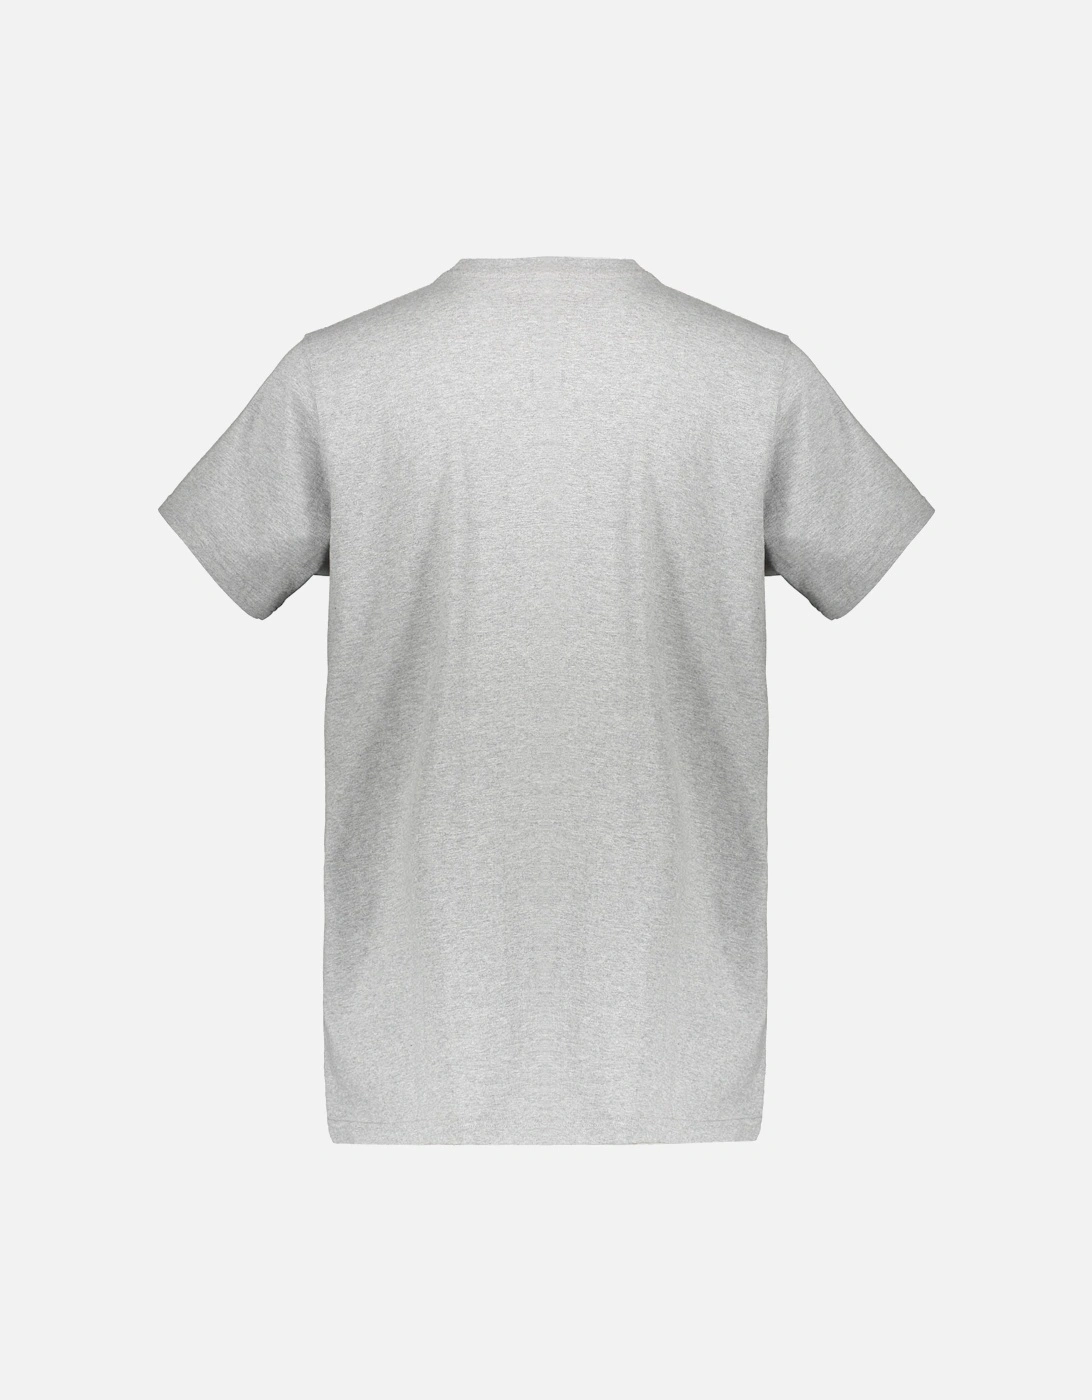 Shattered Woodblock Print T-Shirt - Grey